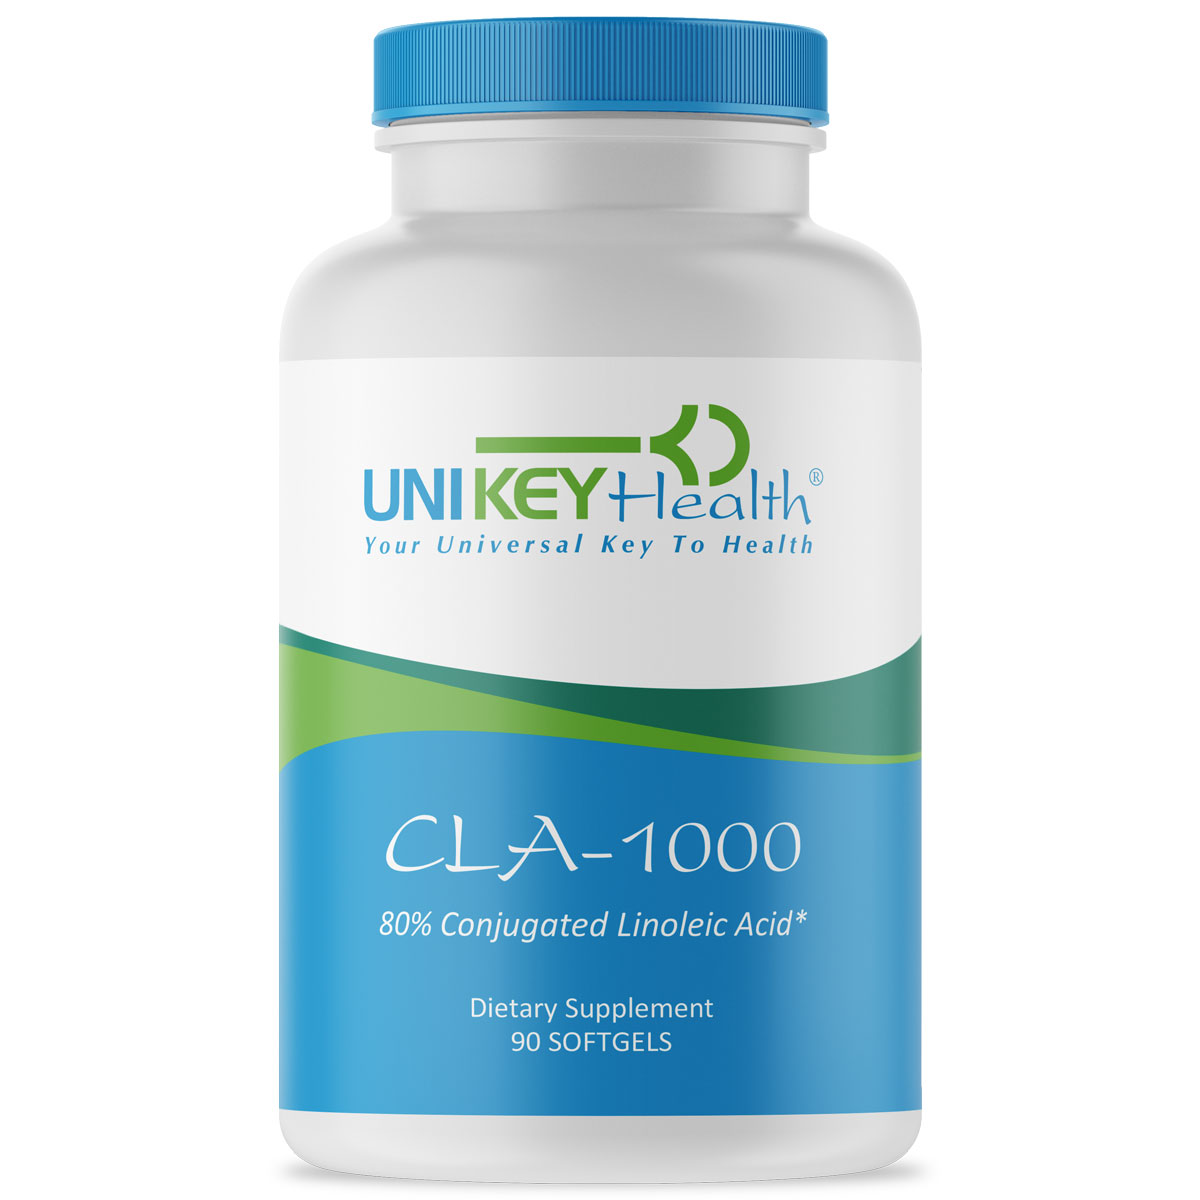 CLA-1000 by UNI KEY Health